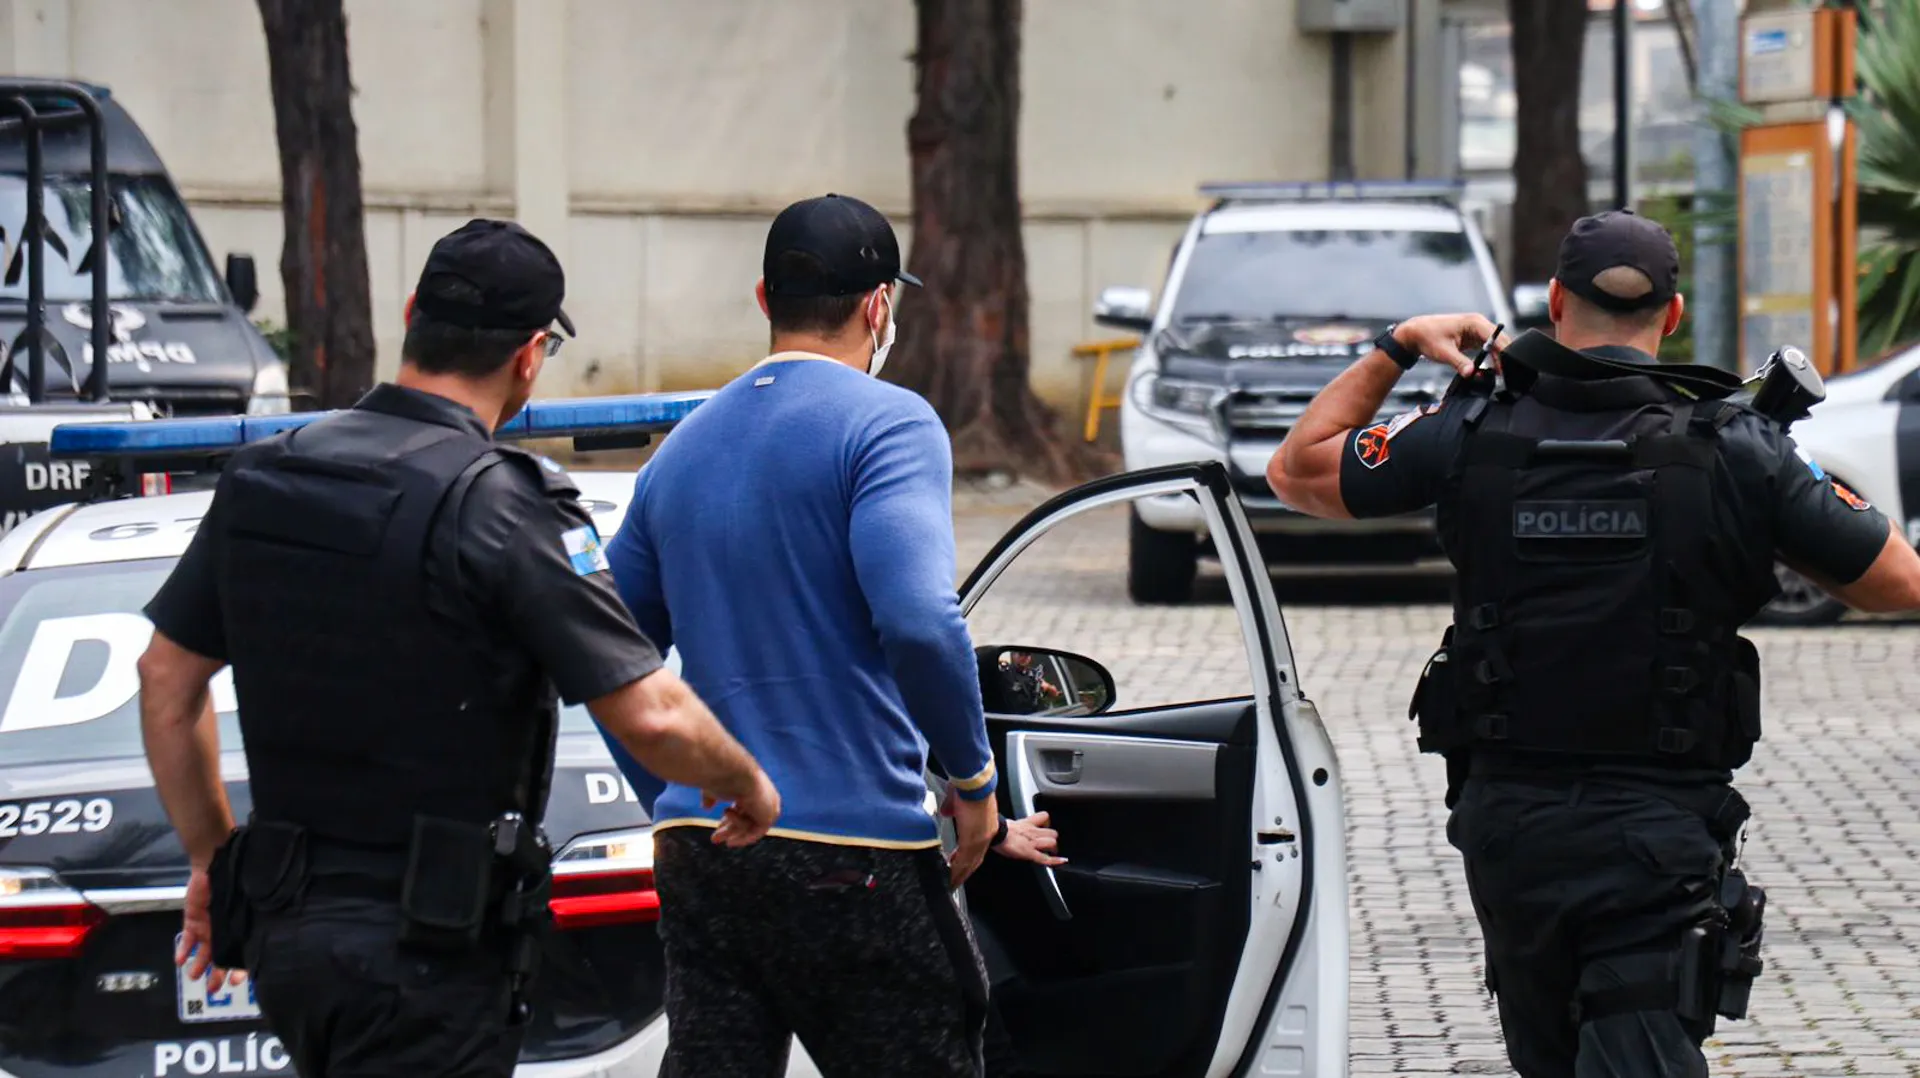 Preso foi conduzido para a Cidade da Polícia, no Jacarezinho, na Zona Norte do Rio